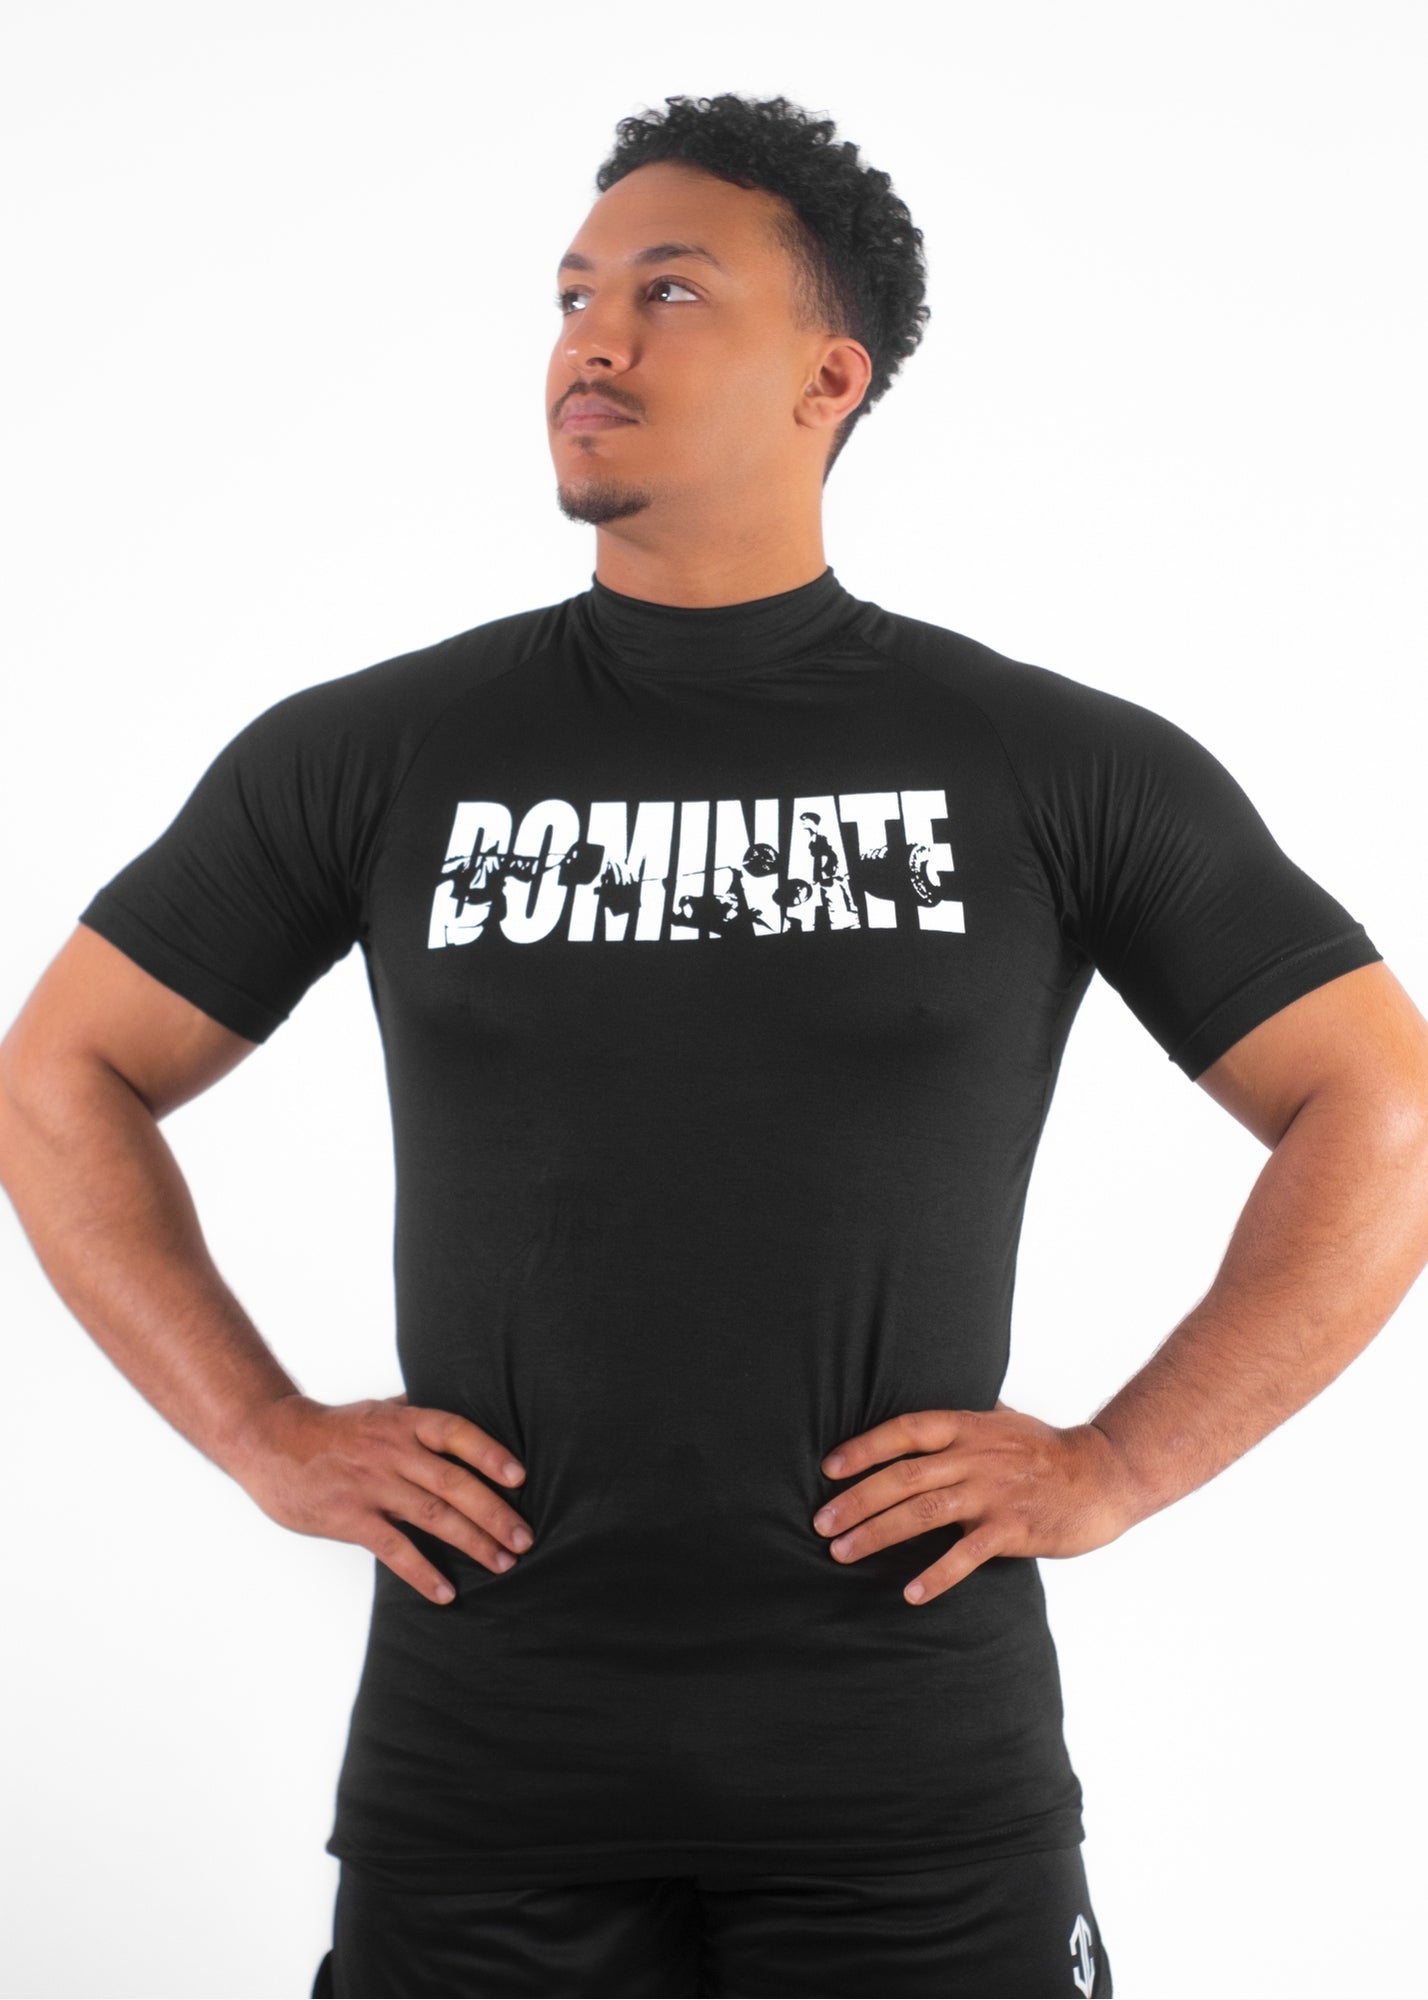 APEX™ Compression T-Shirt "DOMINATE" – NOIR